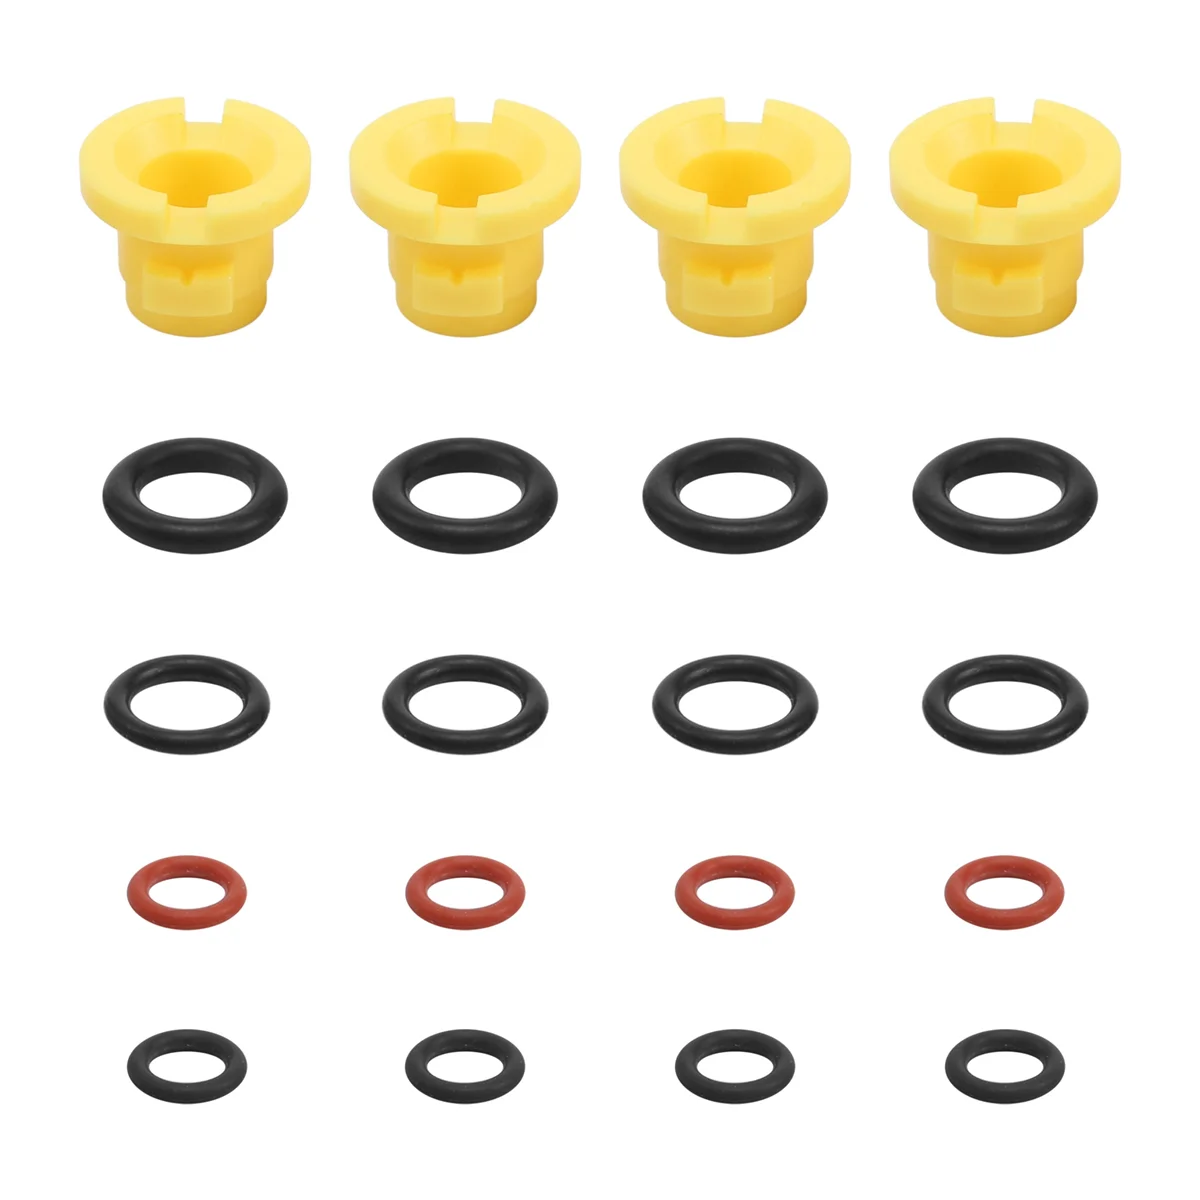 

O-Ring for Karcher Lance Hose Nozzle Spare O-Ring Seal 2.640-729.0 Rubber O-Ring Pressure Washer for K2 K3 K4 K5 K6 K7 A